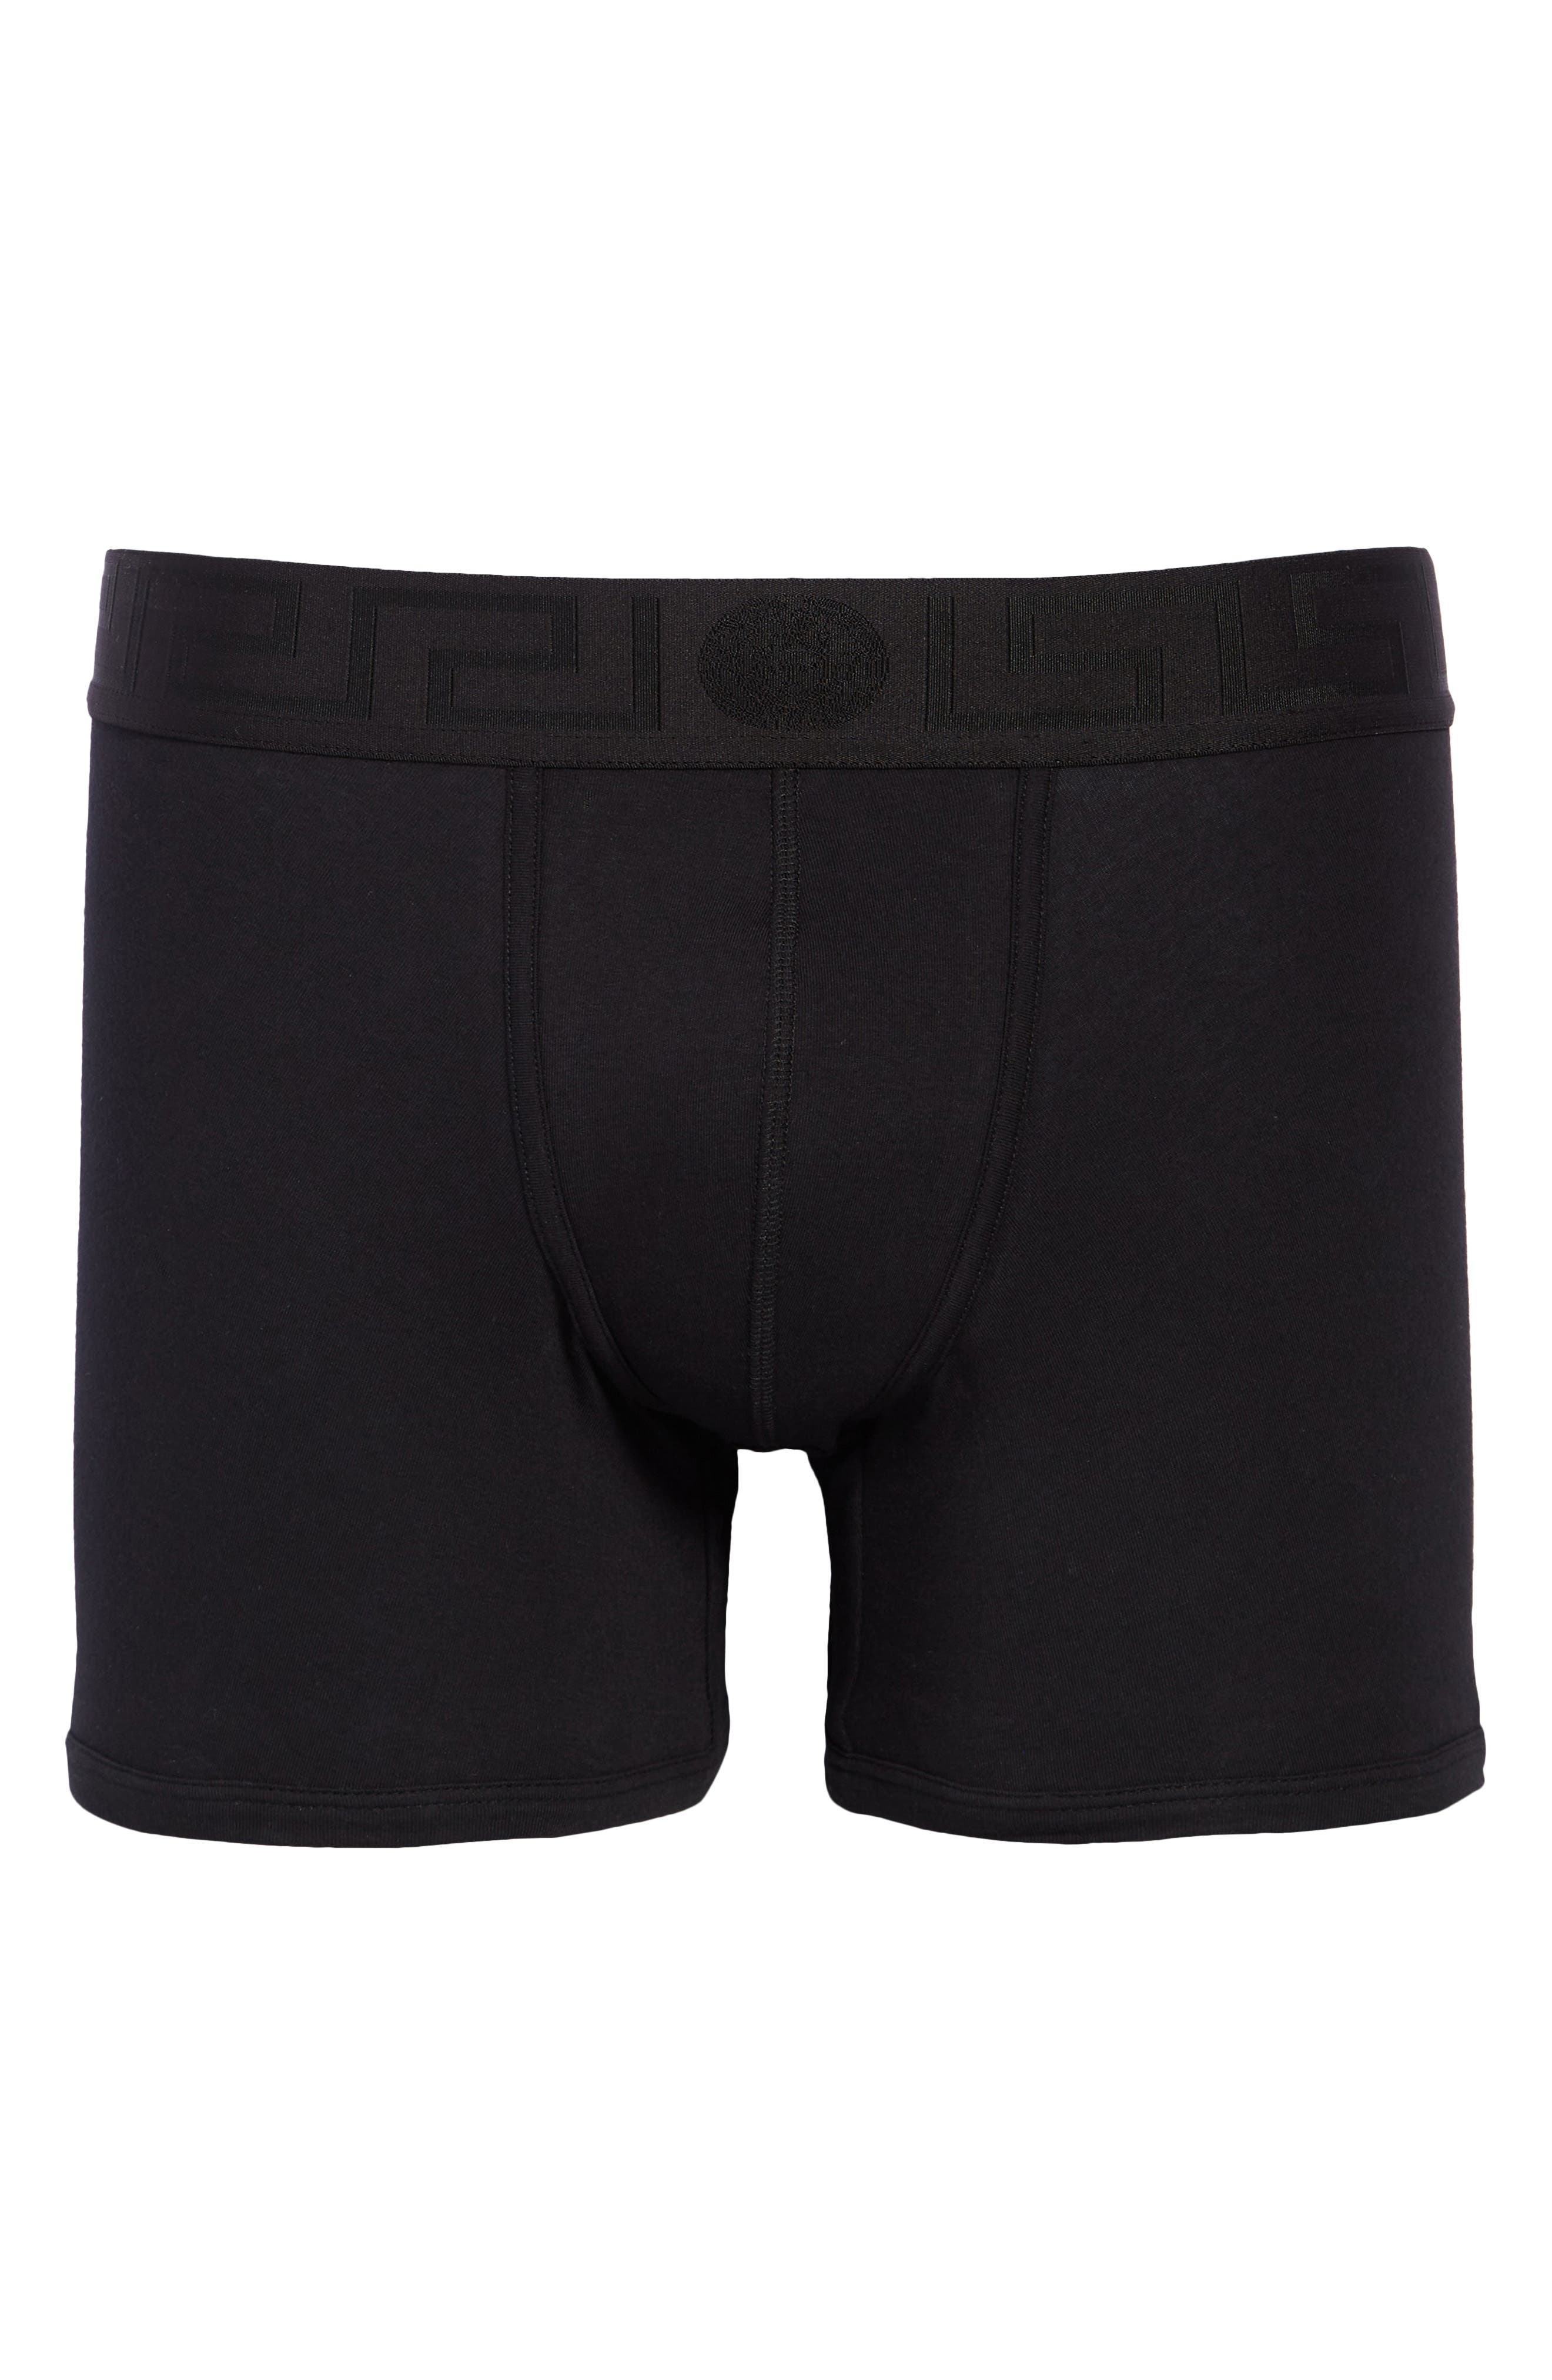 versace underwear nordstrom